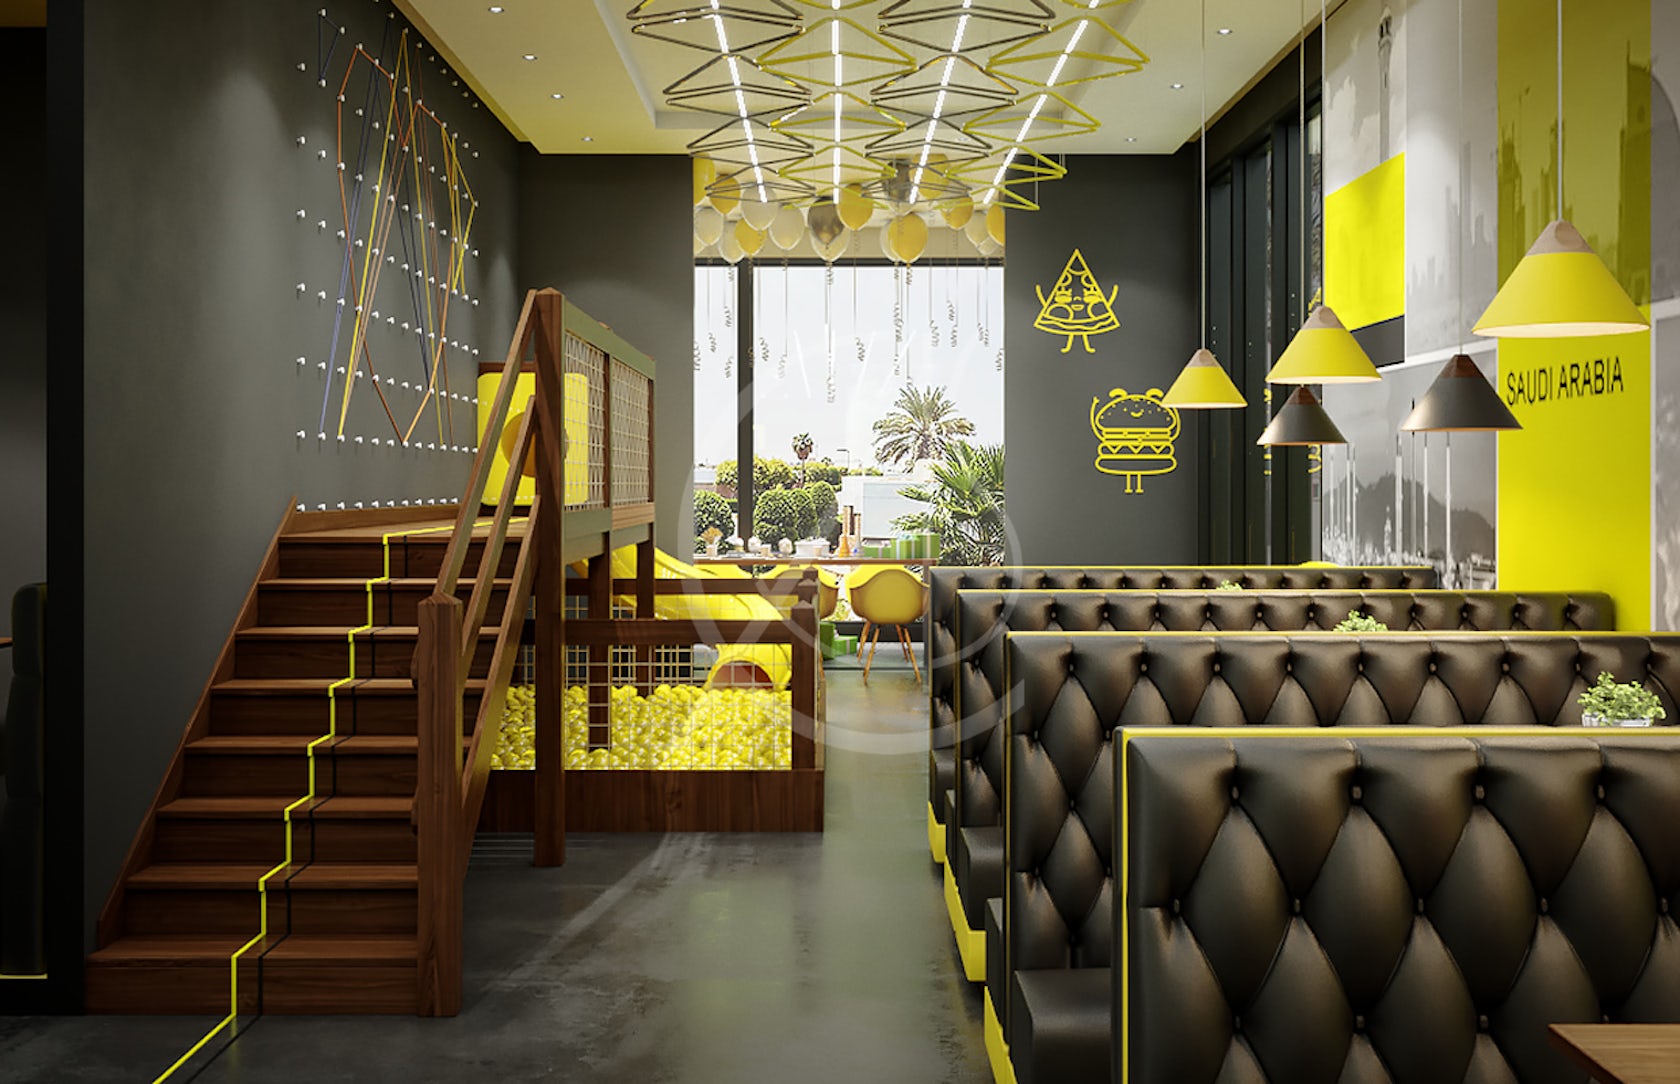 13 Small Restaurant Interior Design Ideas Images 1440x900 4k